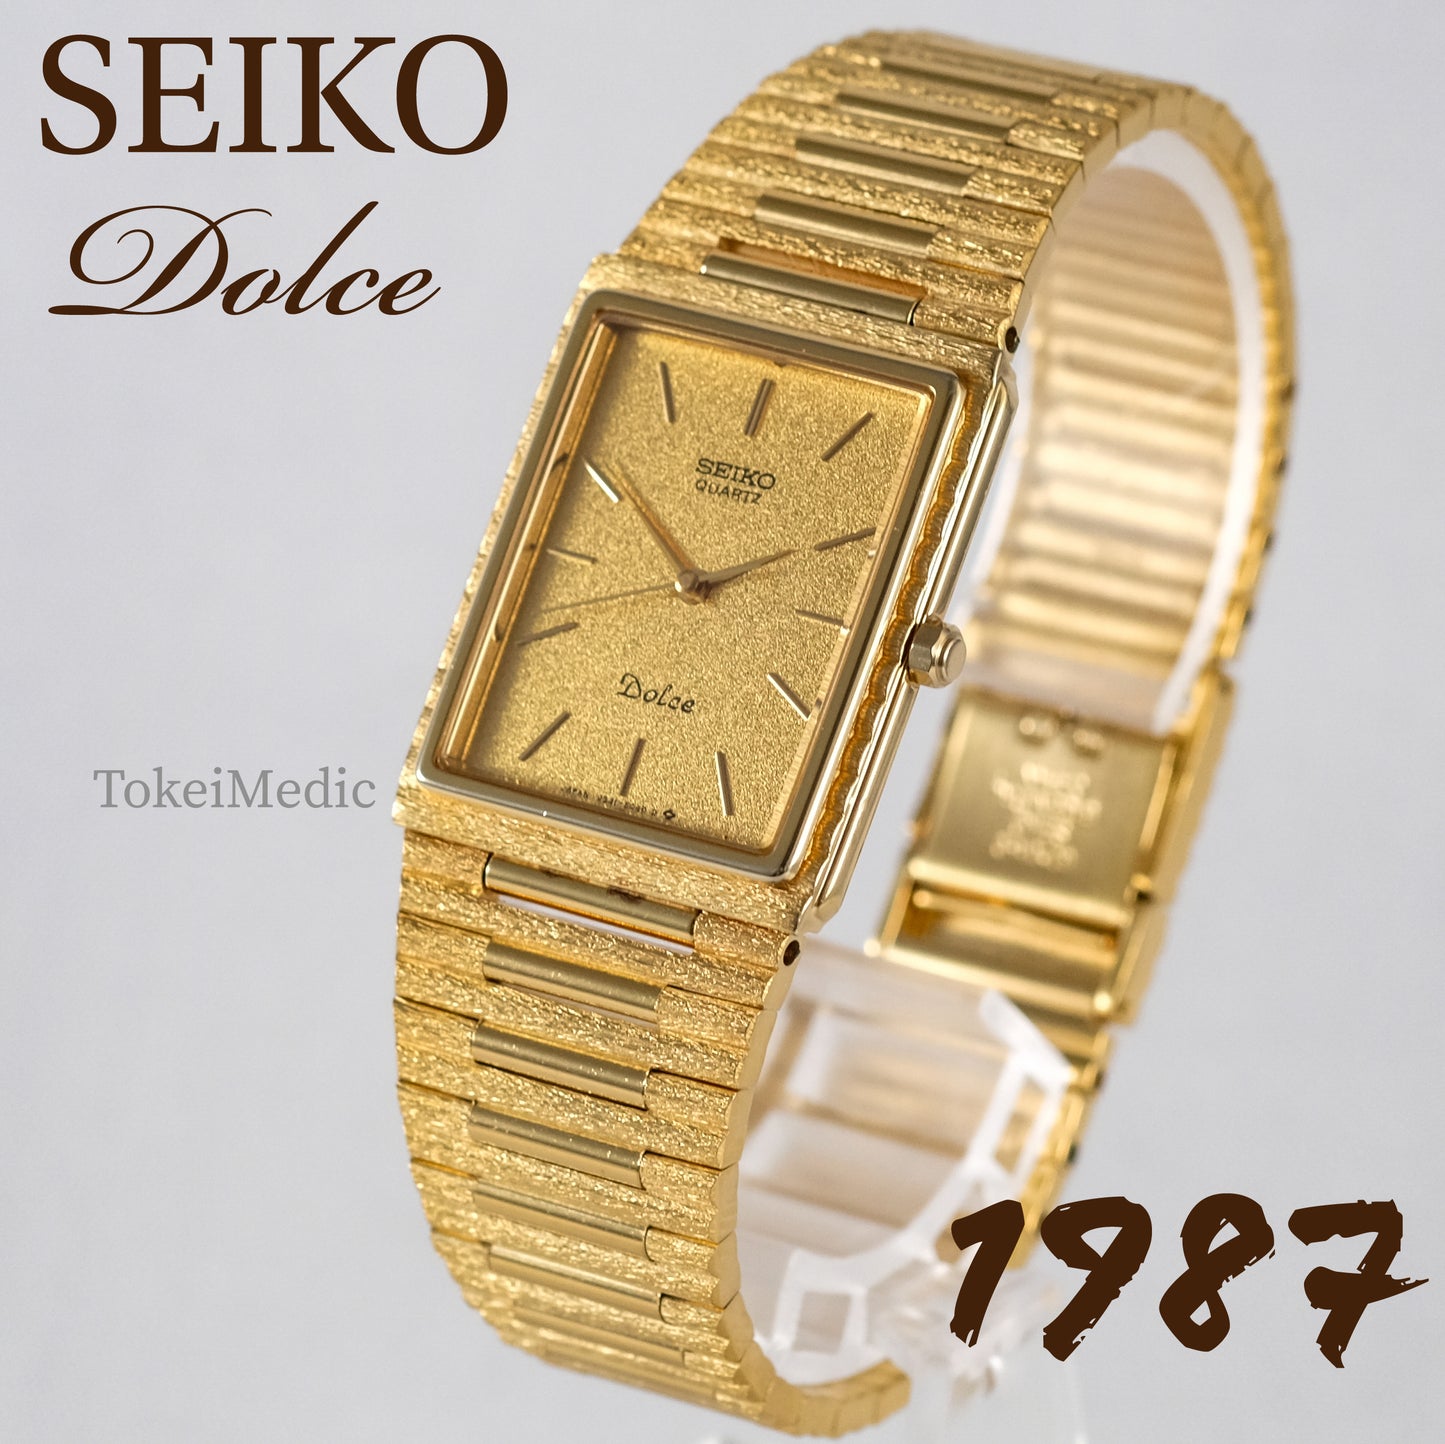 1987 Seiko Dolce 9531-5040